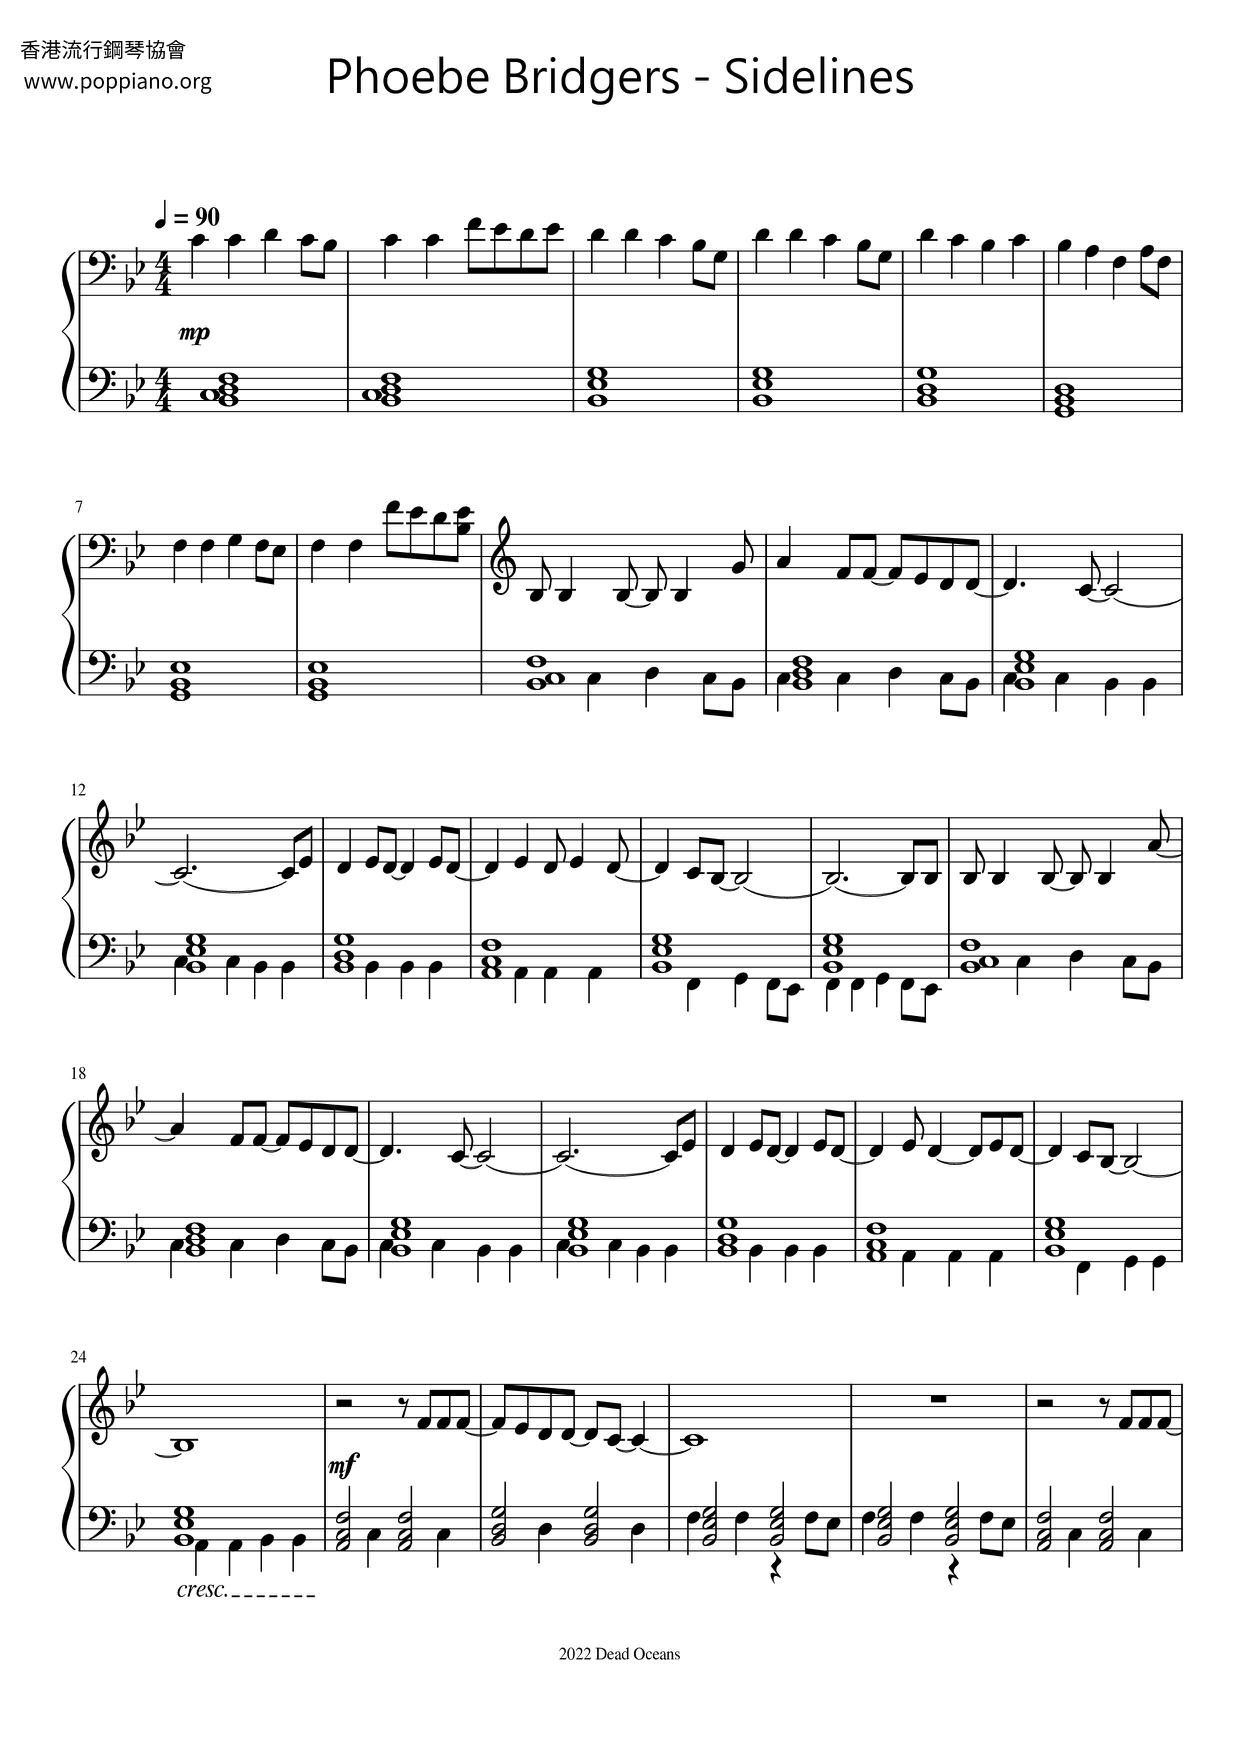 Sidelinesピアノ譜